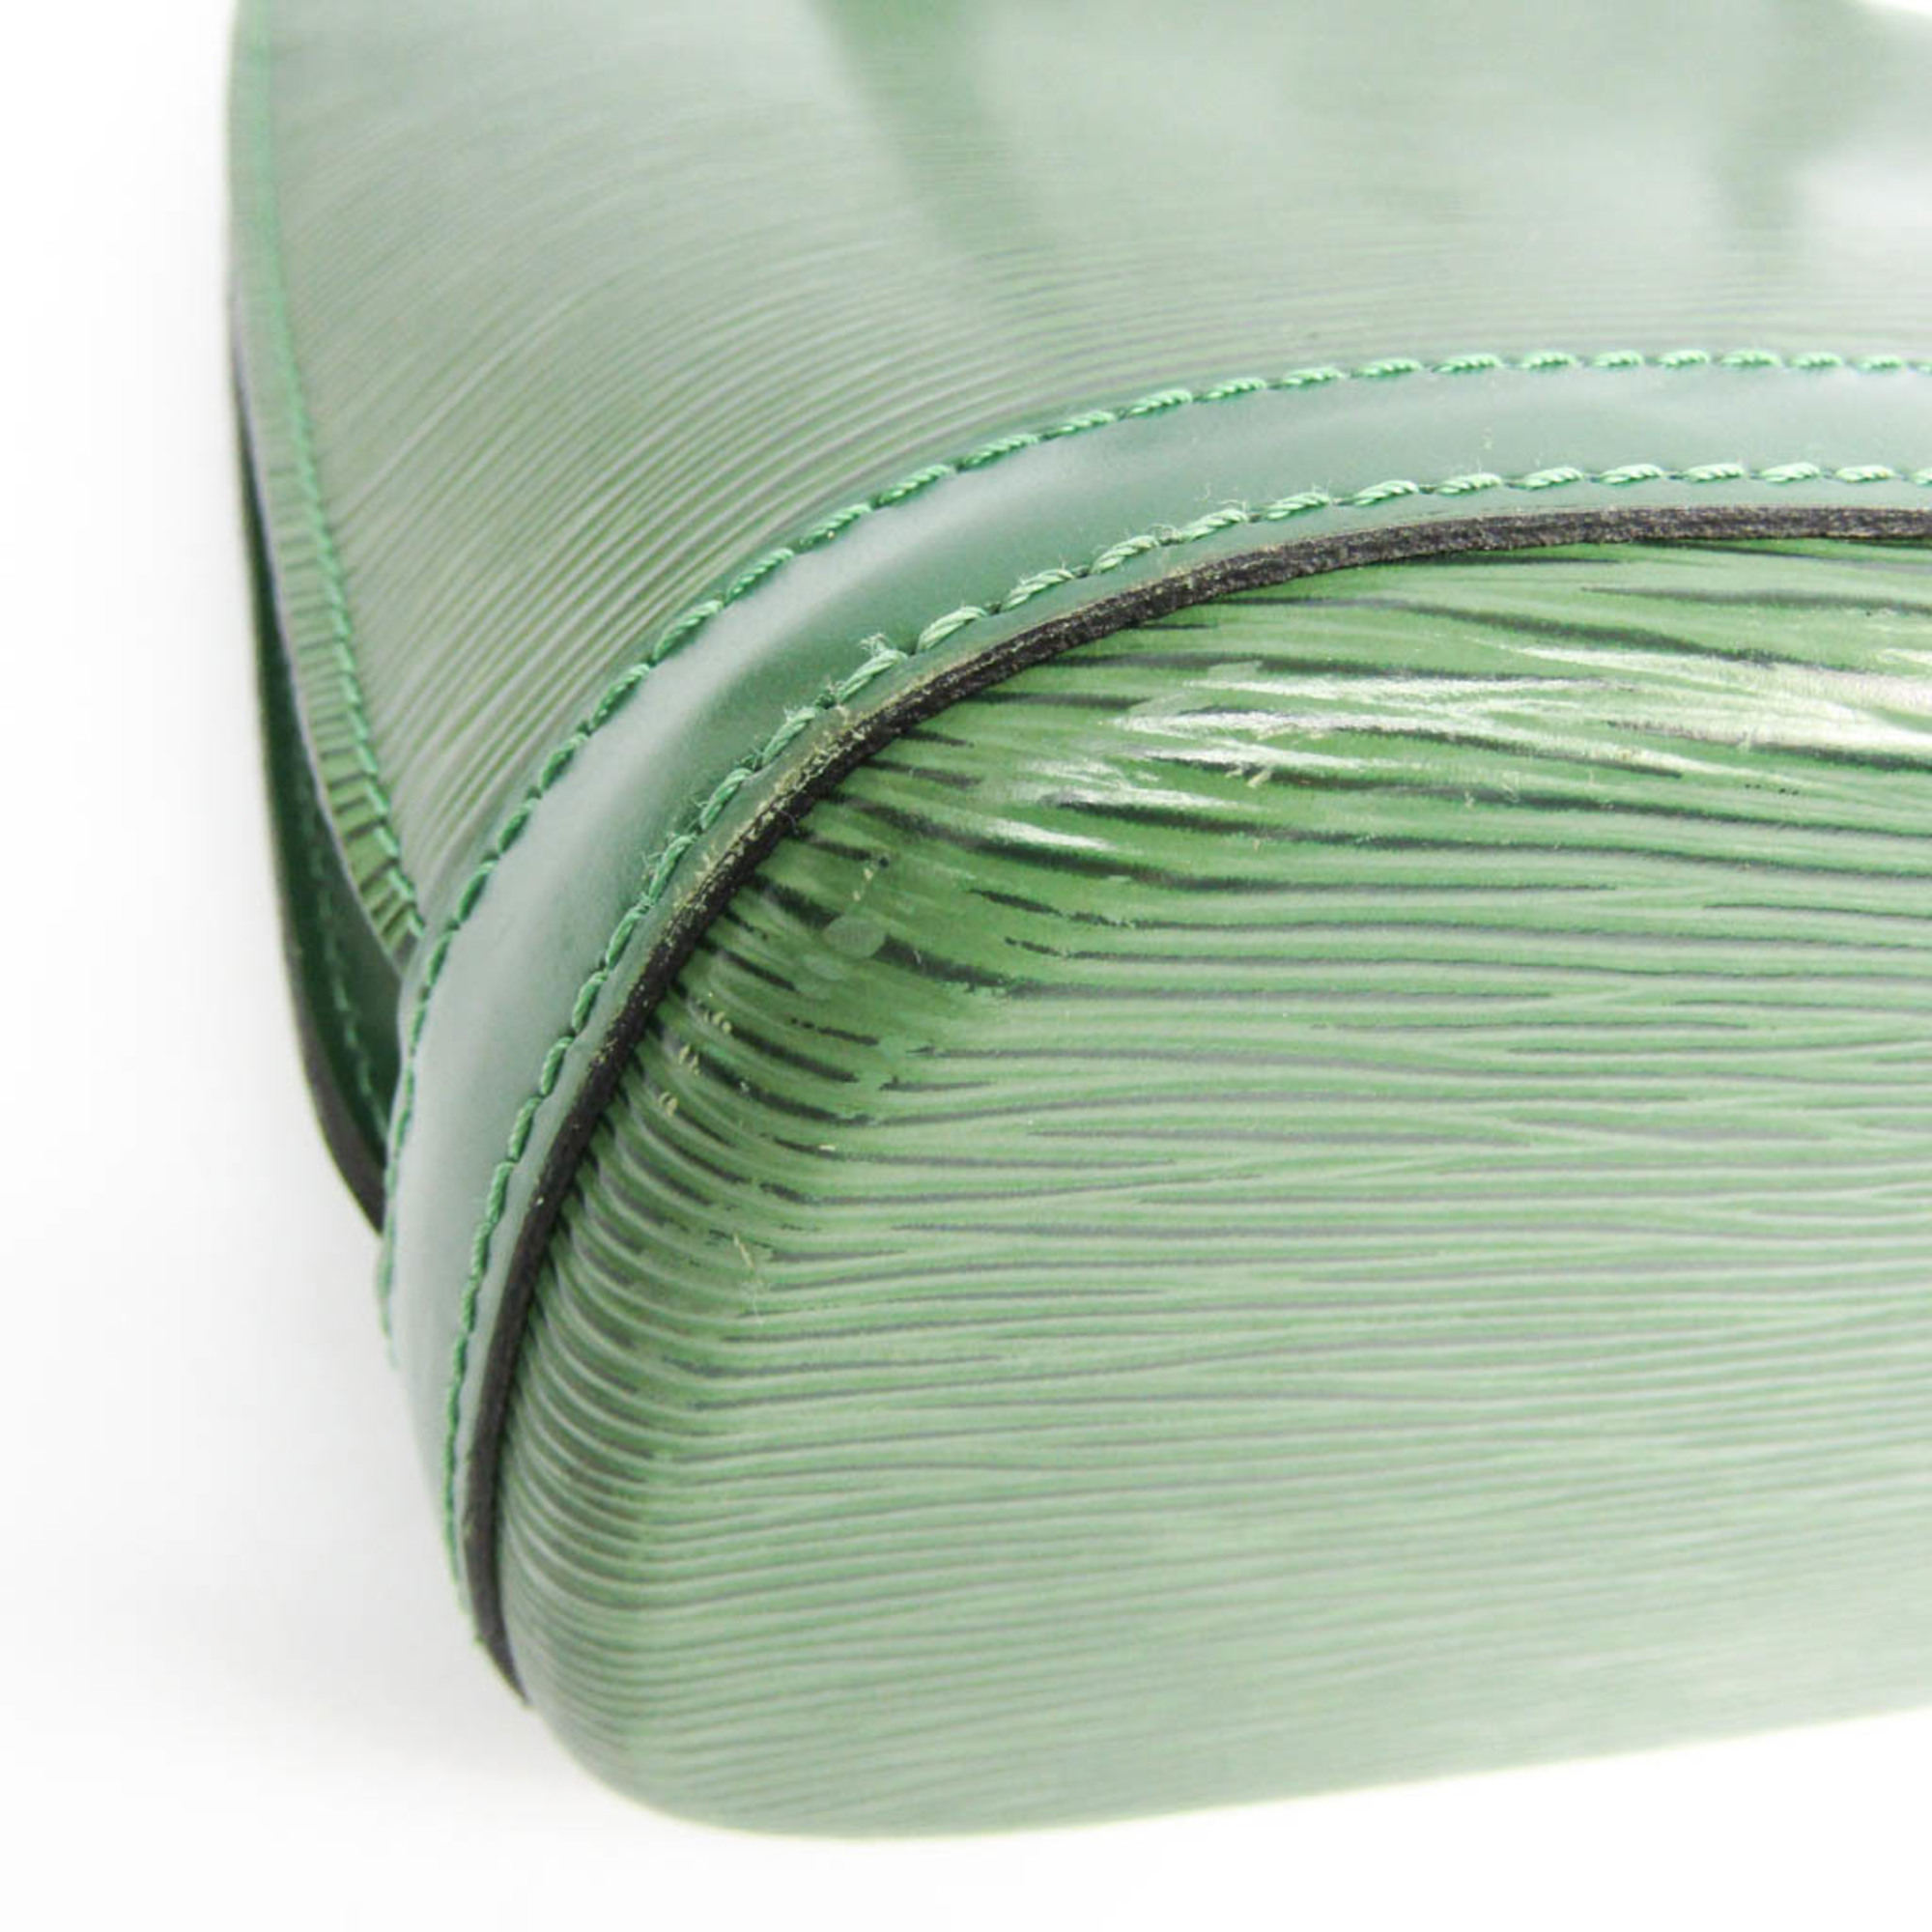 Louis Vuitton Epi Lussac M52284 Shoulder Bag Borneo Green